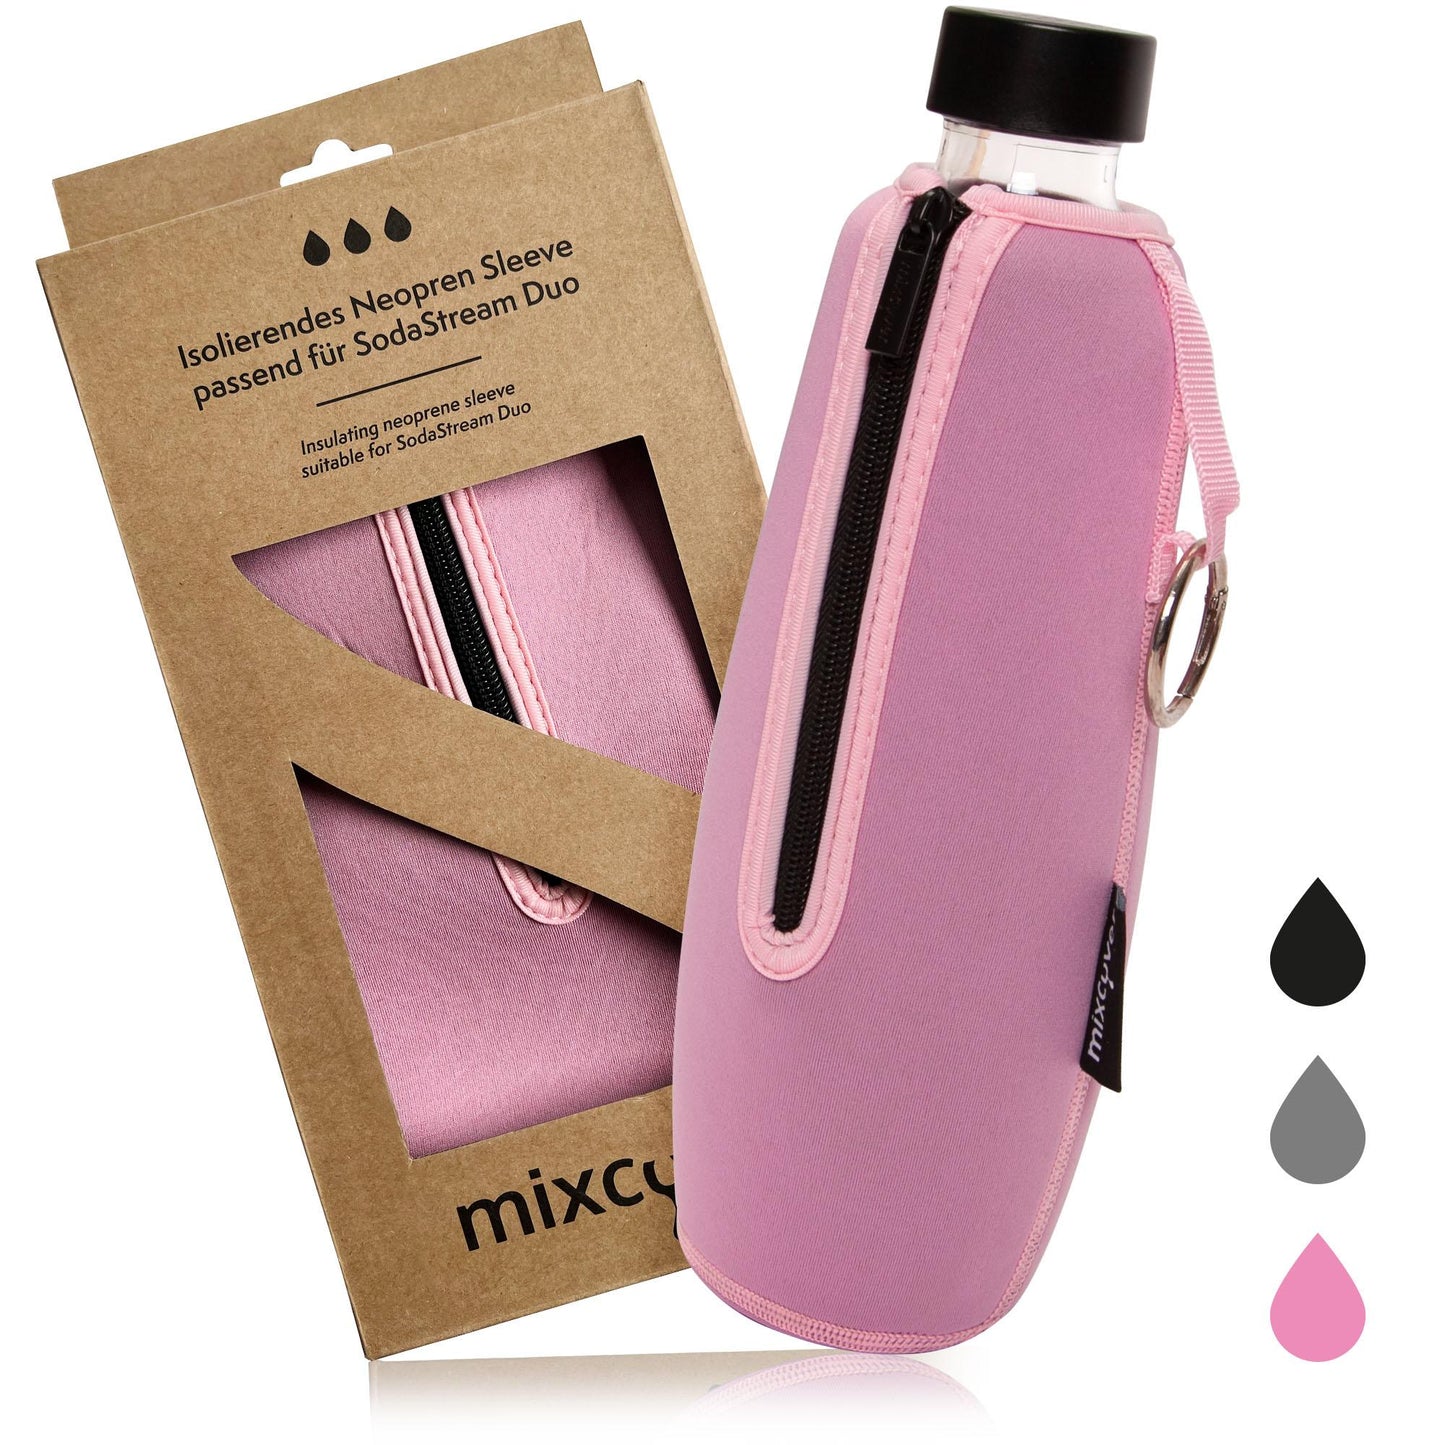 mixcover Manica di protezione da bottiglia isolata Compatibile con bottiglie di vetro duo di sodastream Cover protettivo per bottiglie, protezione da frattura e graffi, colore rosa